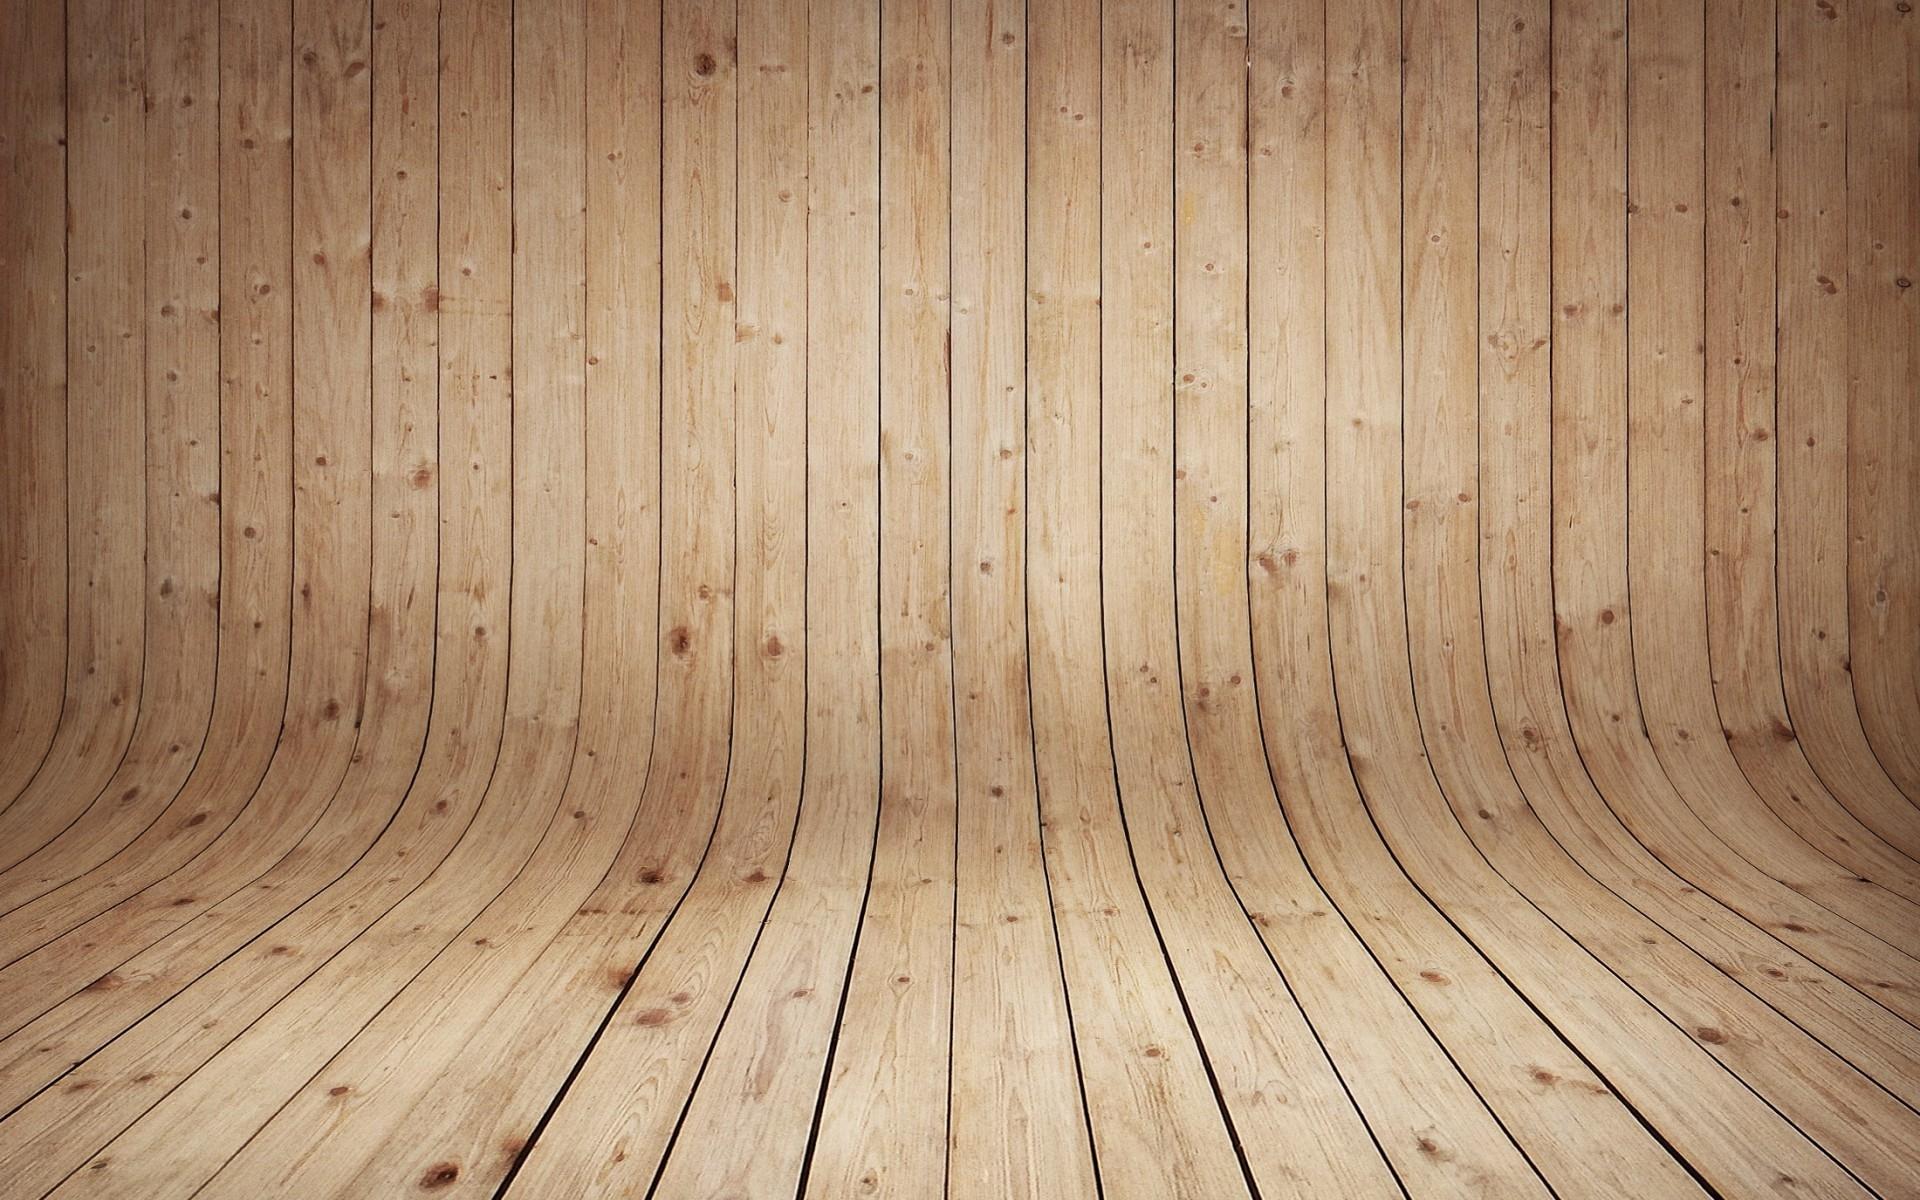 Wooden curved floor HD Wallpaper, get it now